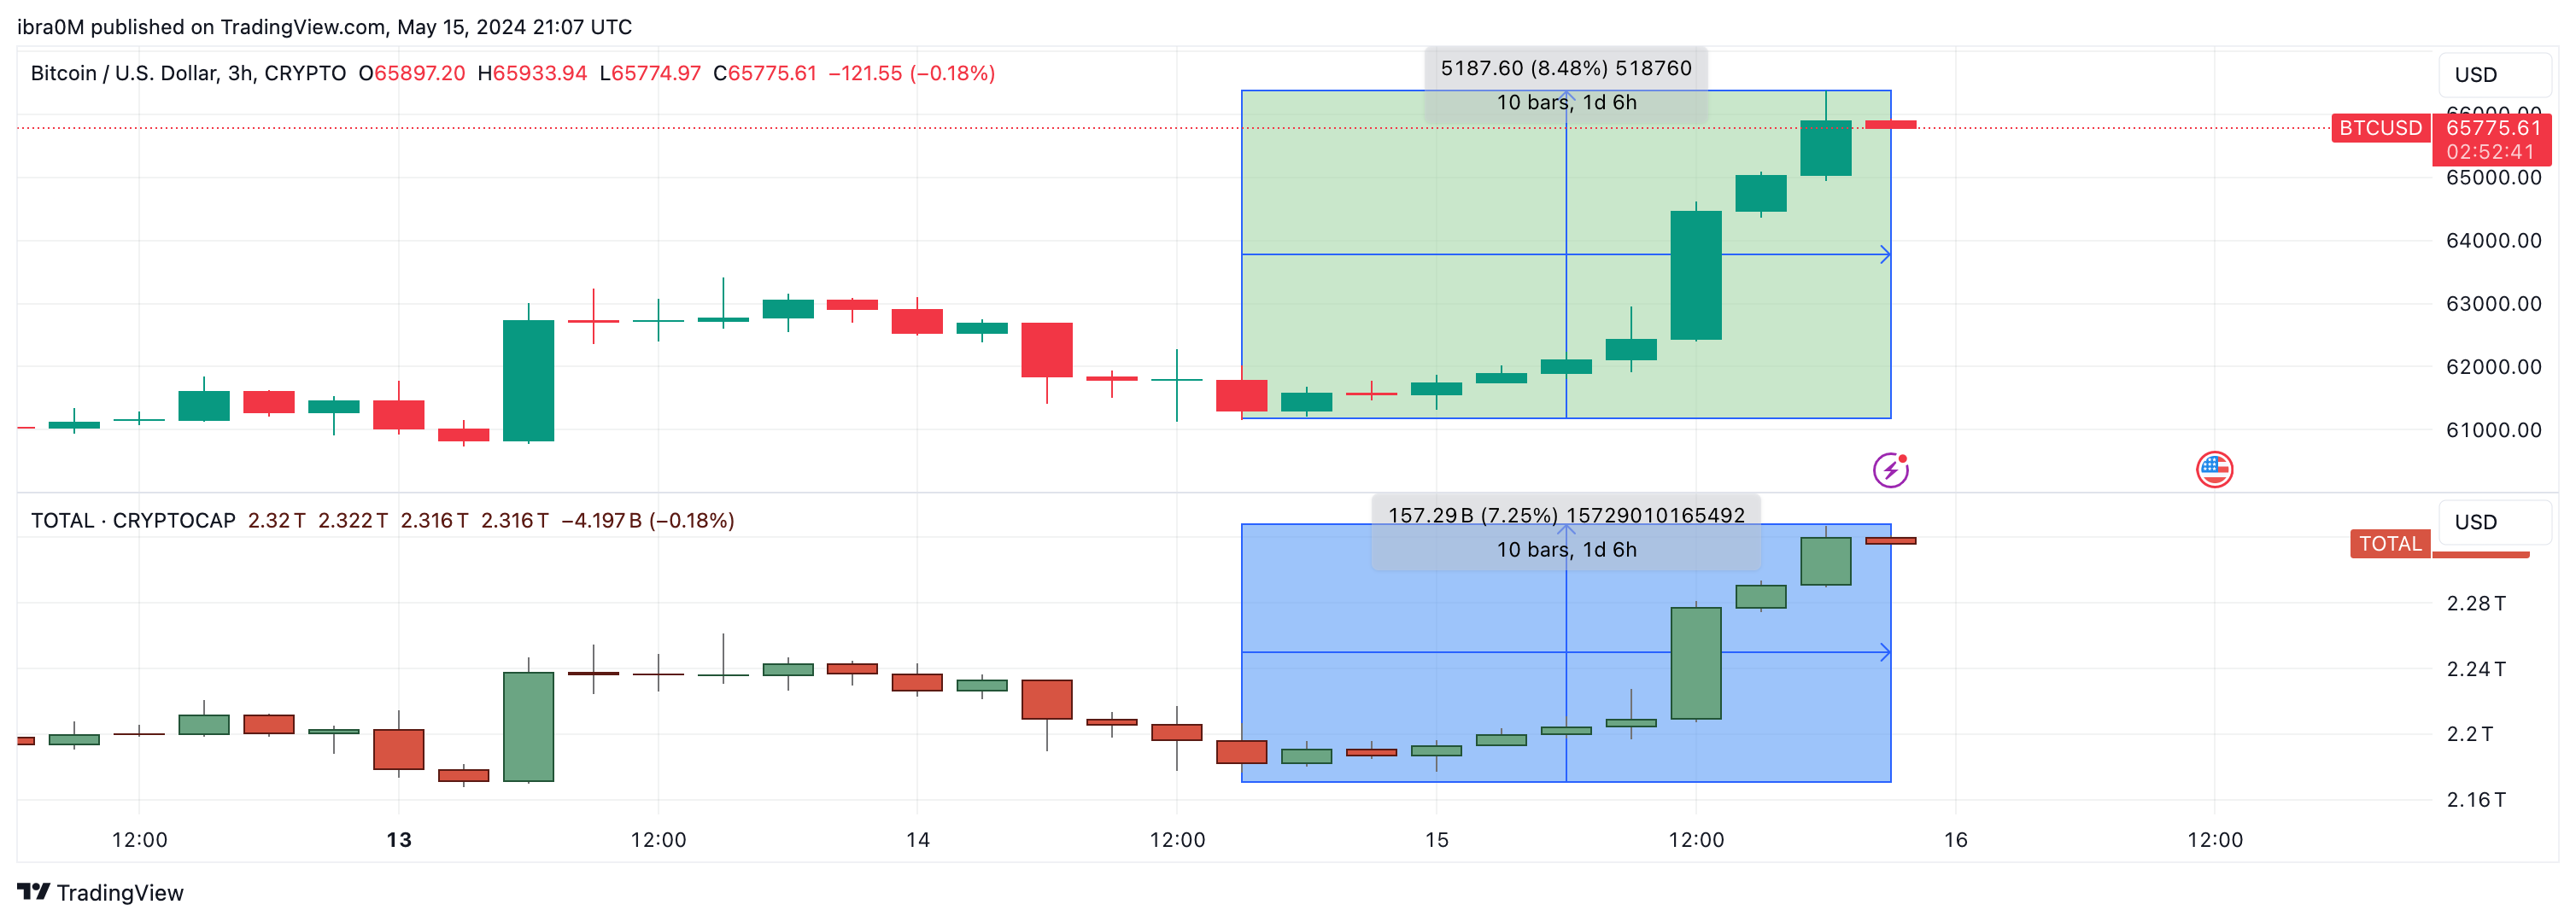 Bitcoin Price (BTC/USD) vs. Crypto TOTALCAP 4-hour chart via TradingView | May 15, 2024